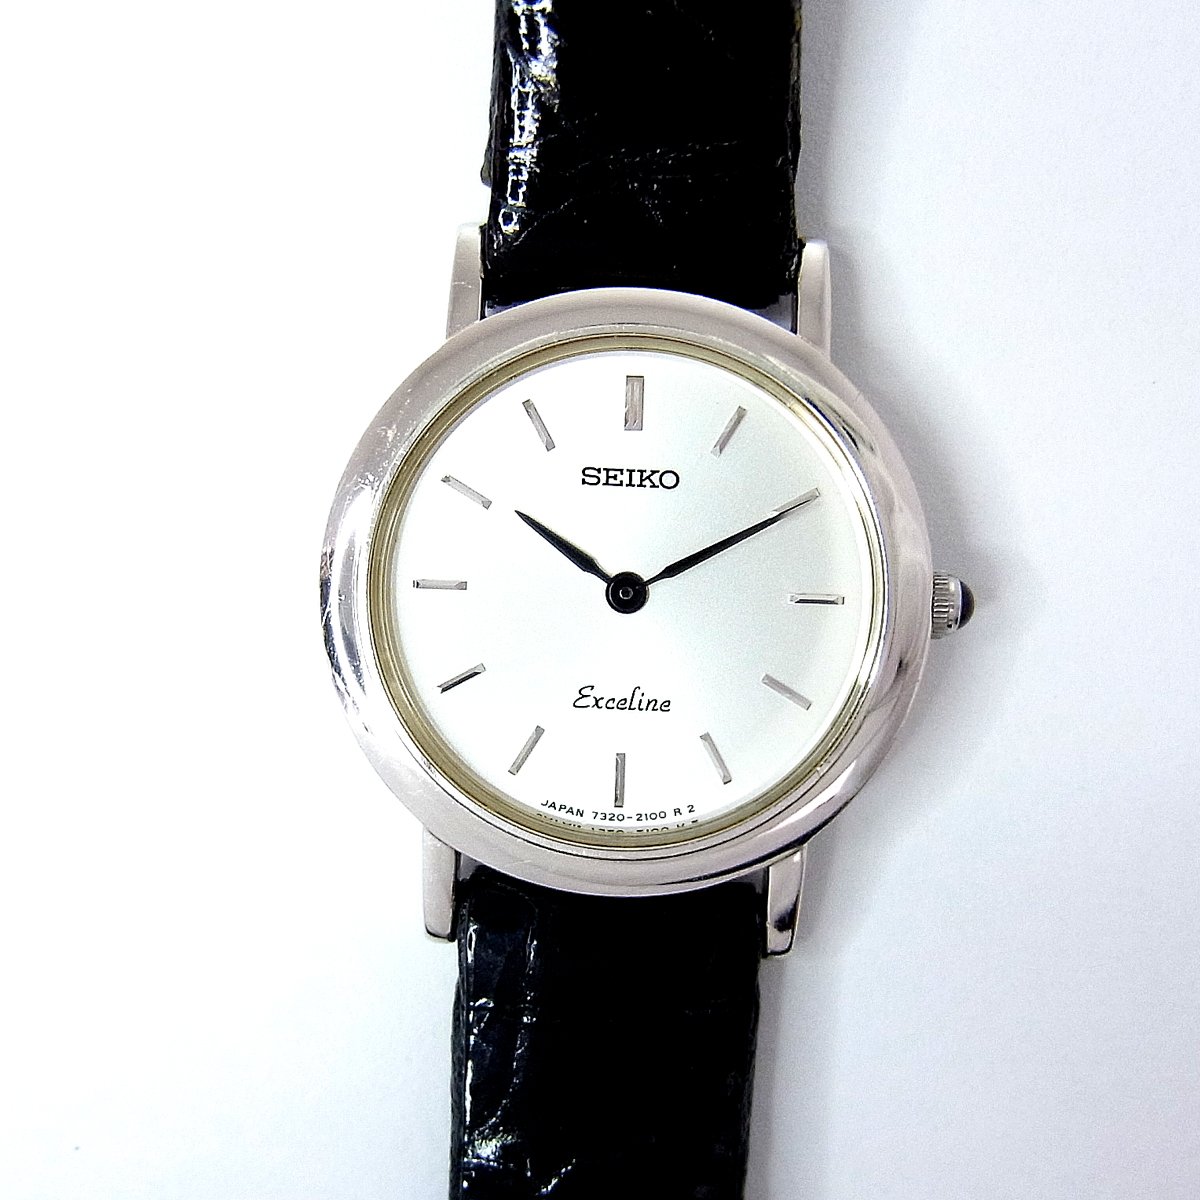 28,000円セイコーエクセリーヌ18KT腕時計